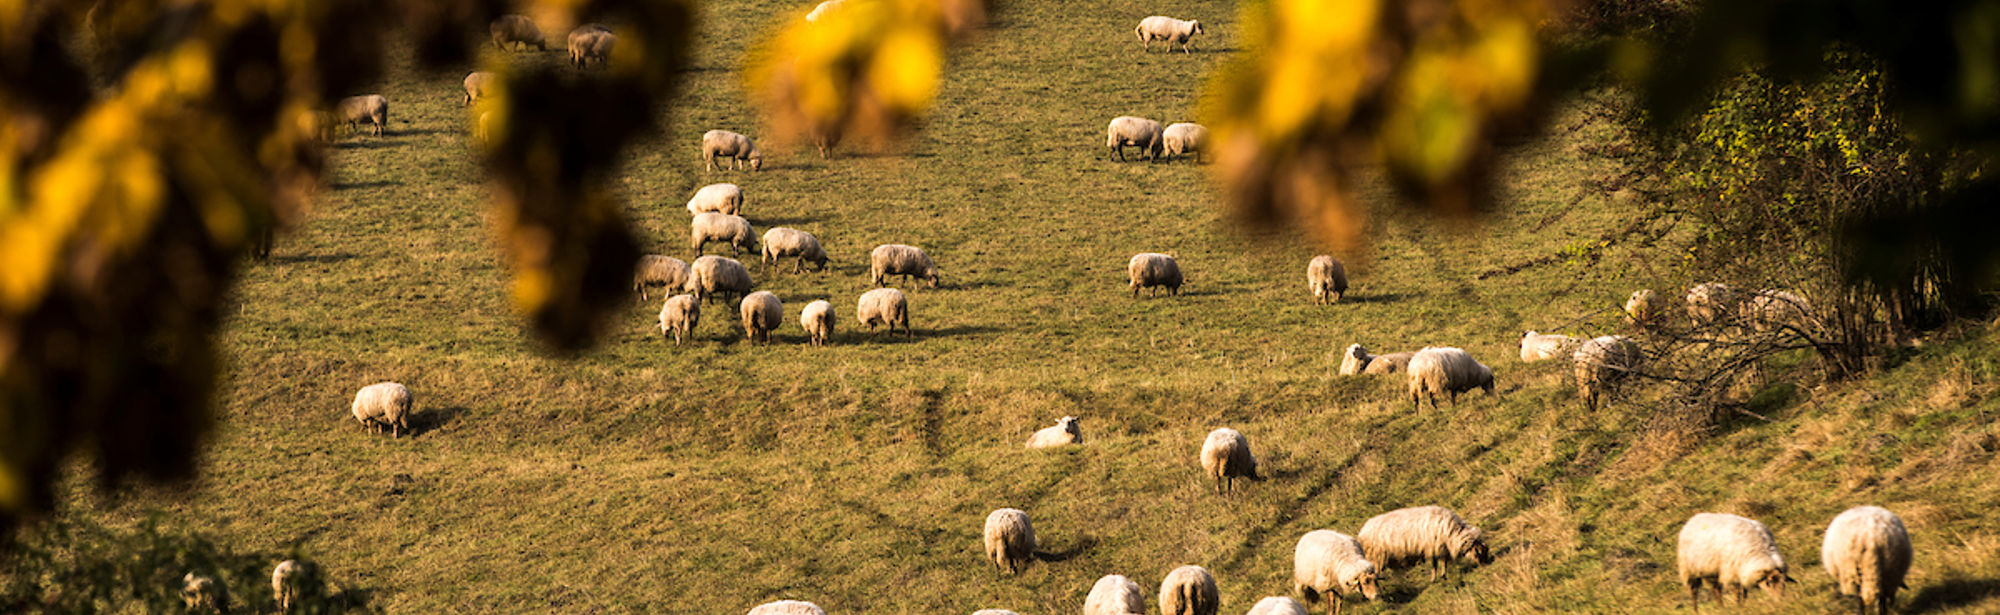 Een doorkijkje op een wei met schapen op een zonnige hefstdag